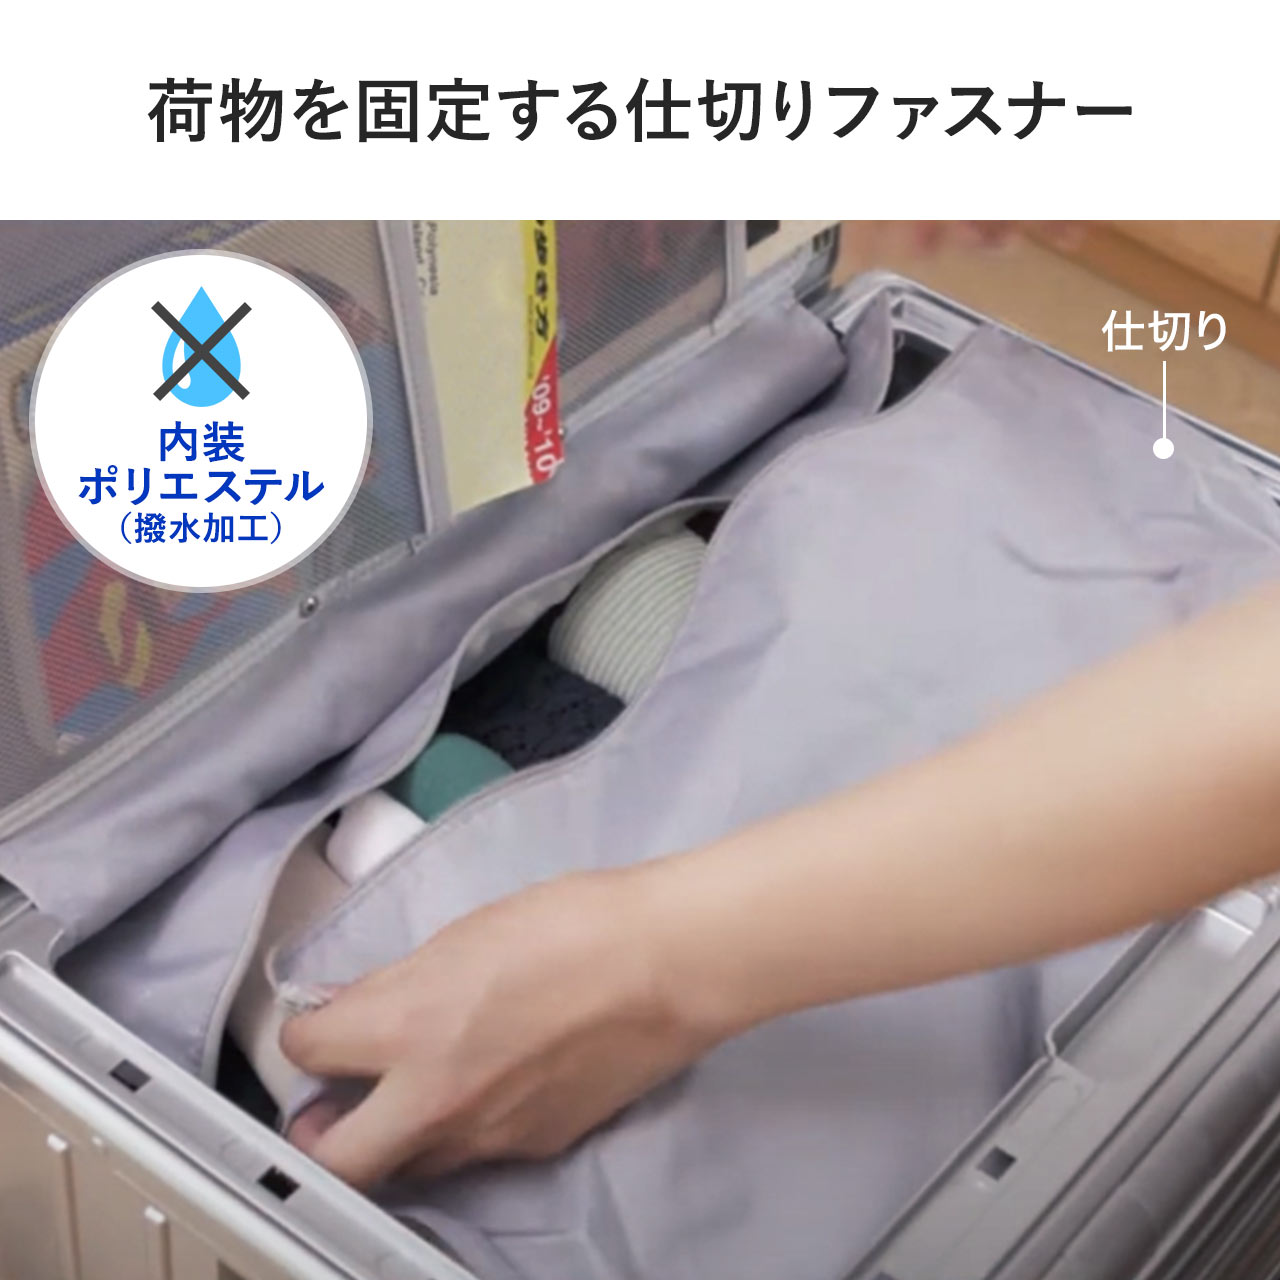 折りたたみ式 スーツケース キャリーケース 容量35L 静音キャスター